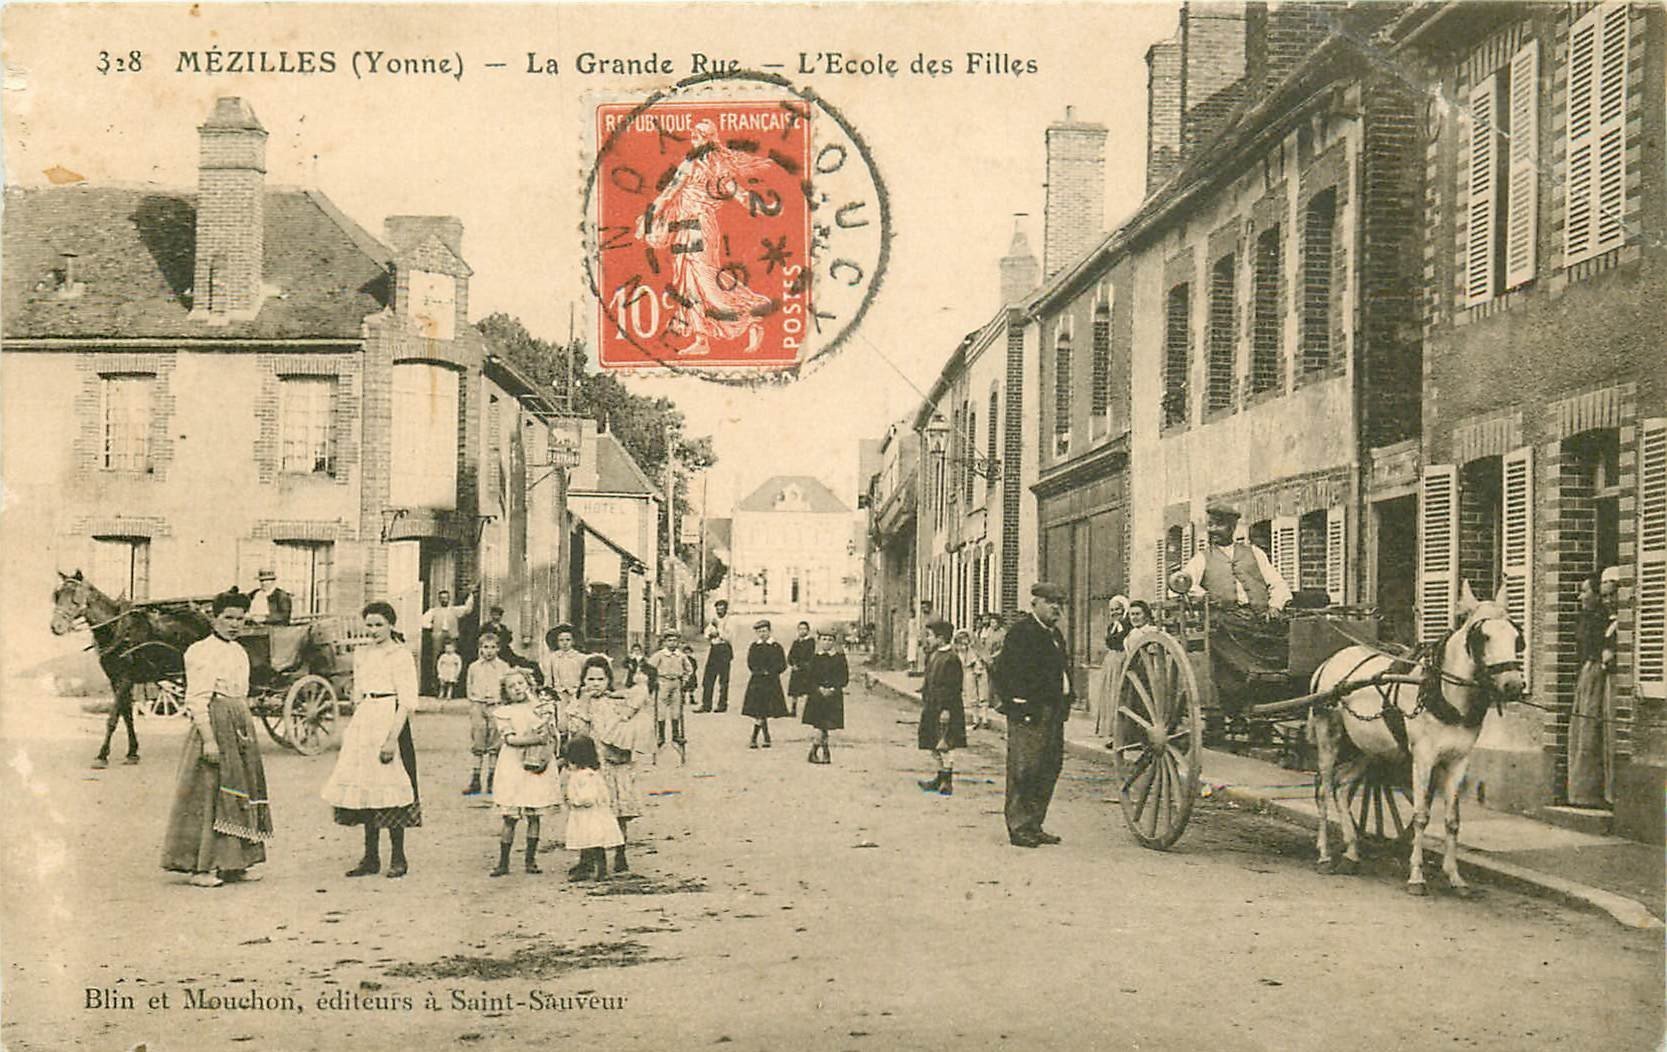 89 MEZILLES. Ecole de Filles et Attelage sur Grande Rue 1911